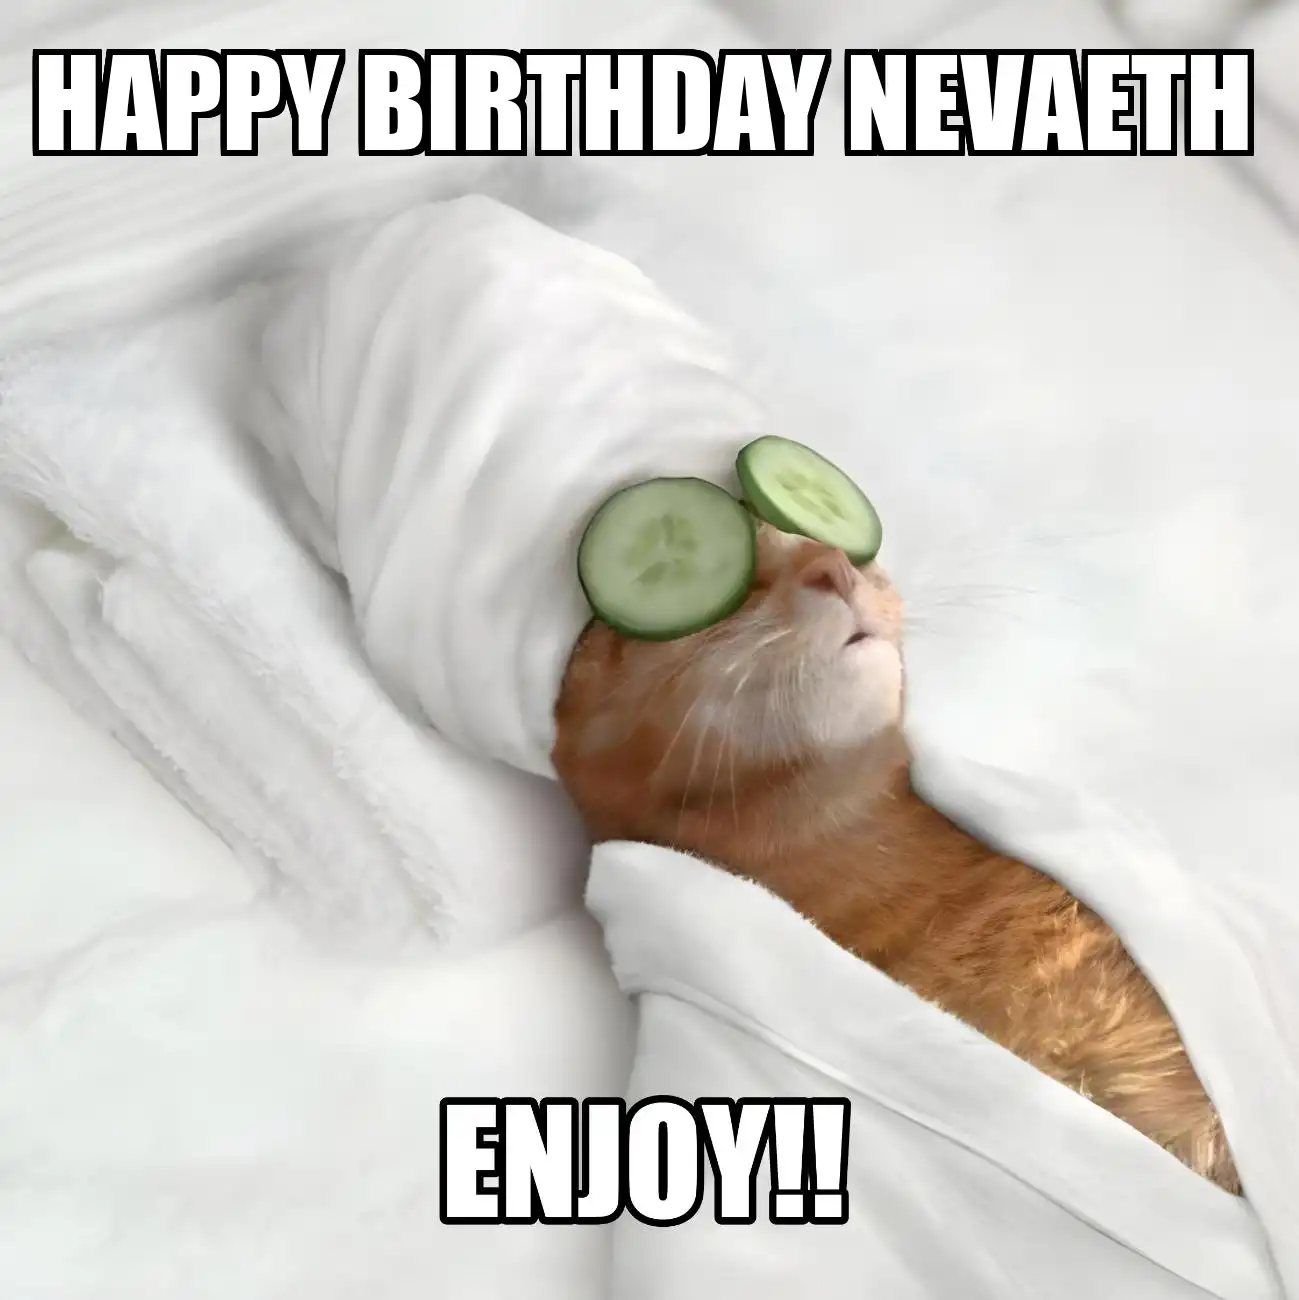 Happy Birthday Nevaeth Enjoy Cat Meme